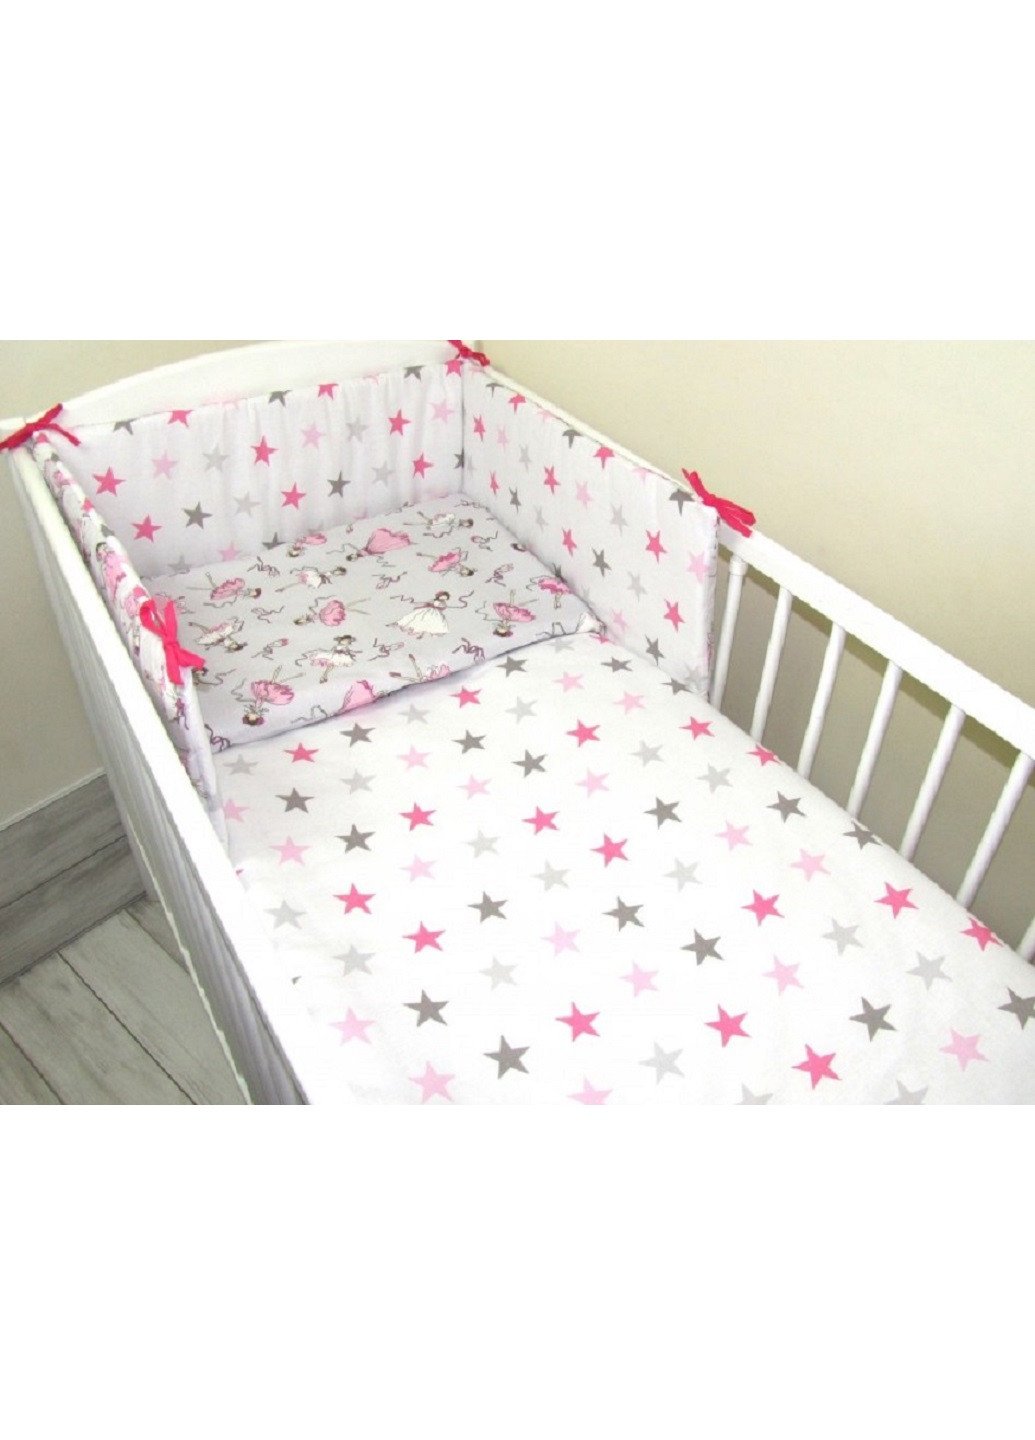 Комплект в детскую кроватку кровать люльку набор бортики защита на три стороны постельное белье ручной работы (28539-Нов) Unbranded (253162440)